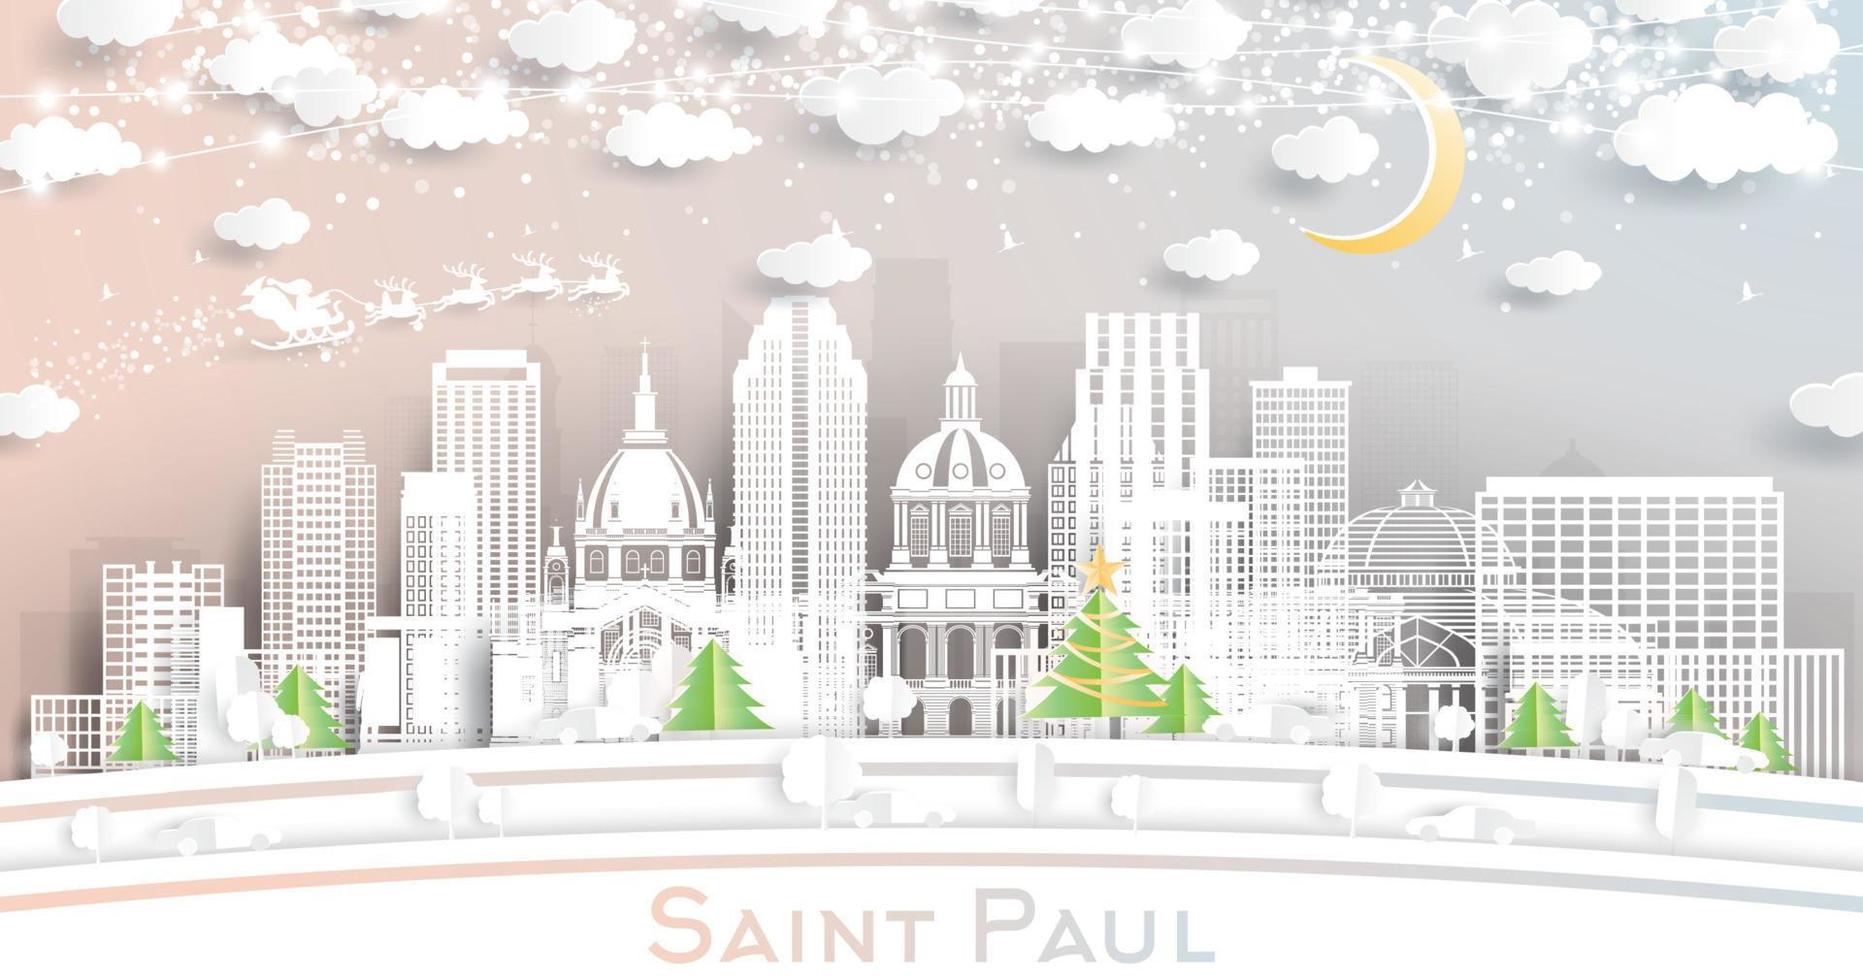 saint paul minnesota city skyline im papierschnittstil mit schneeflocken, mond und neongirlande. vektor